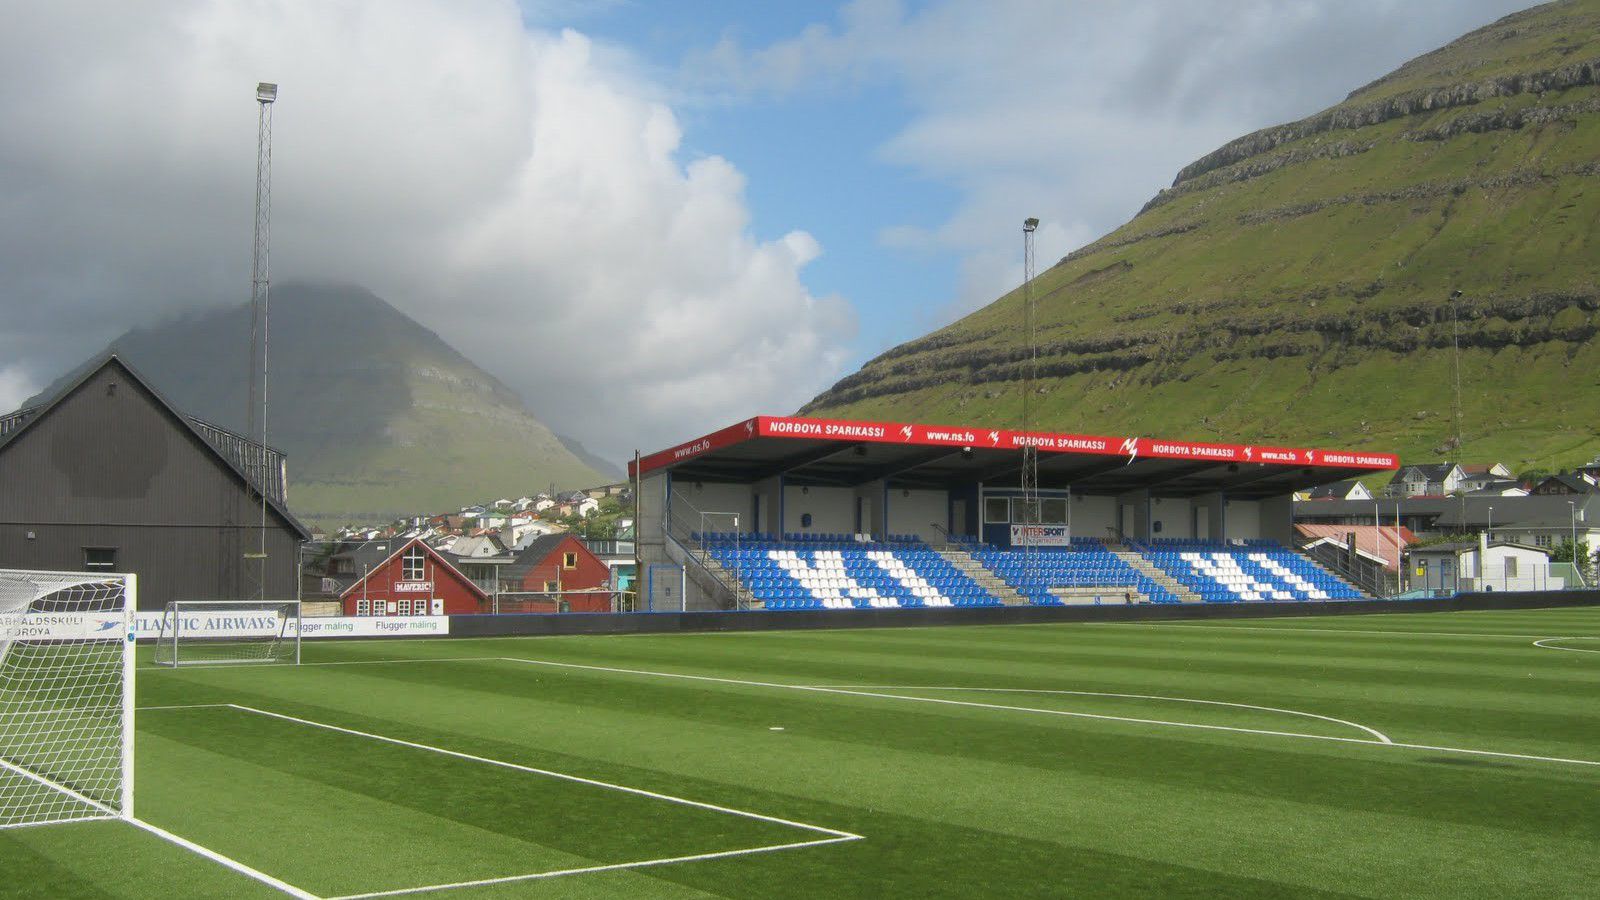 A Klaksvík stadionjában 2500 ember fér el (Fotó: Twitter)